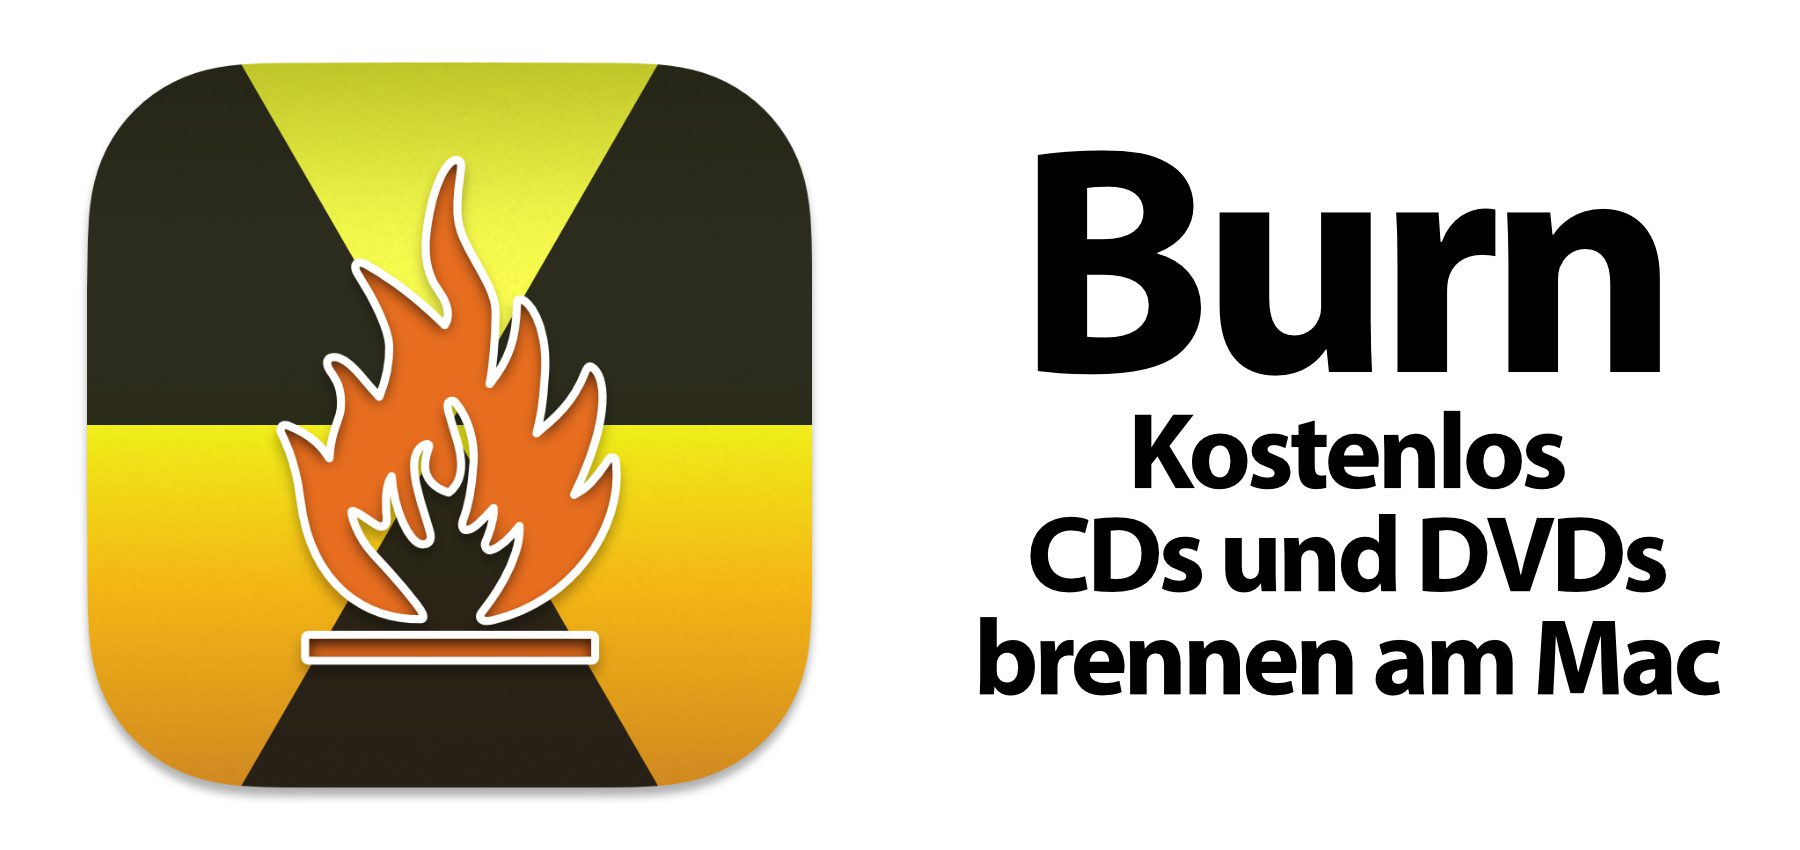 dvd burn app